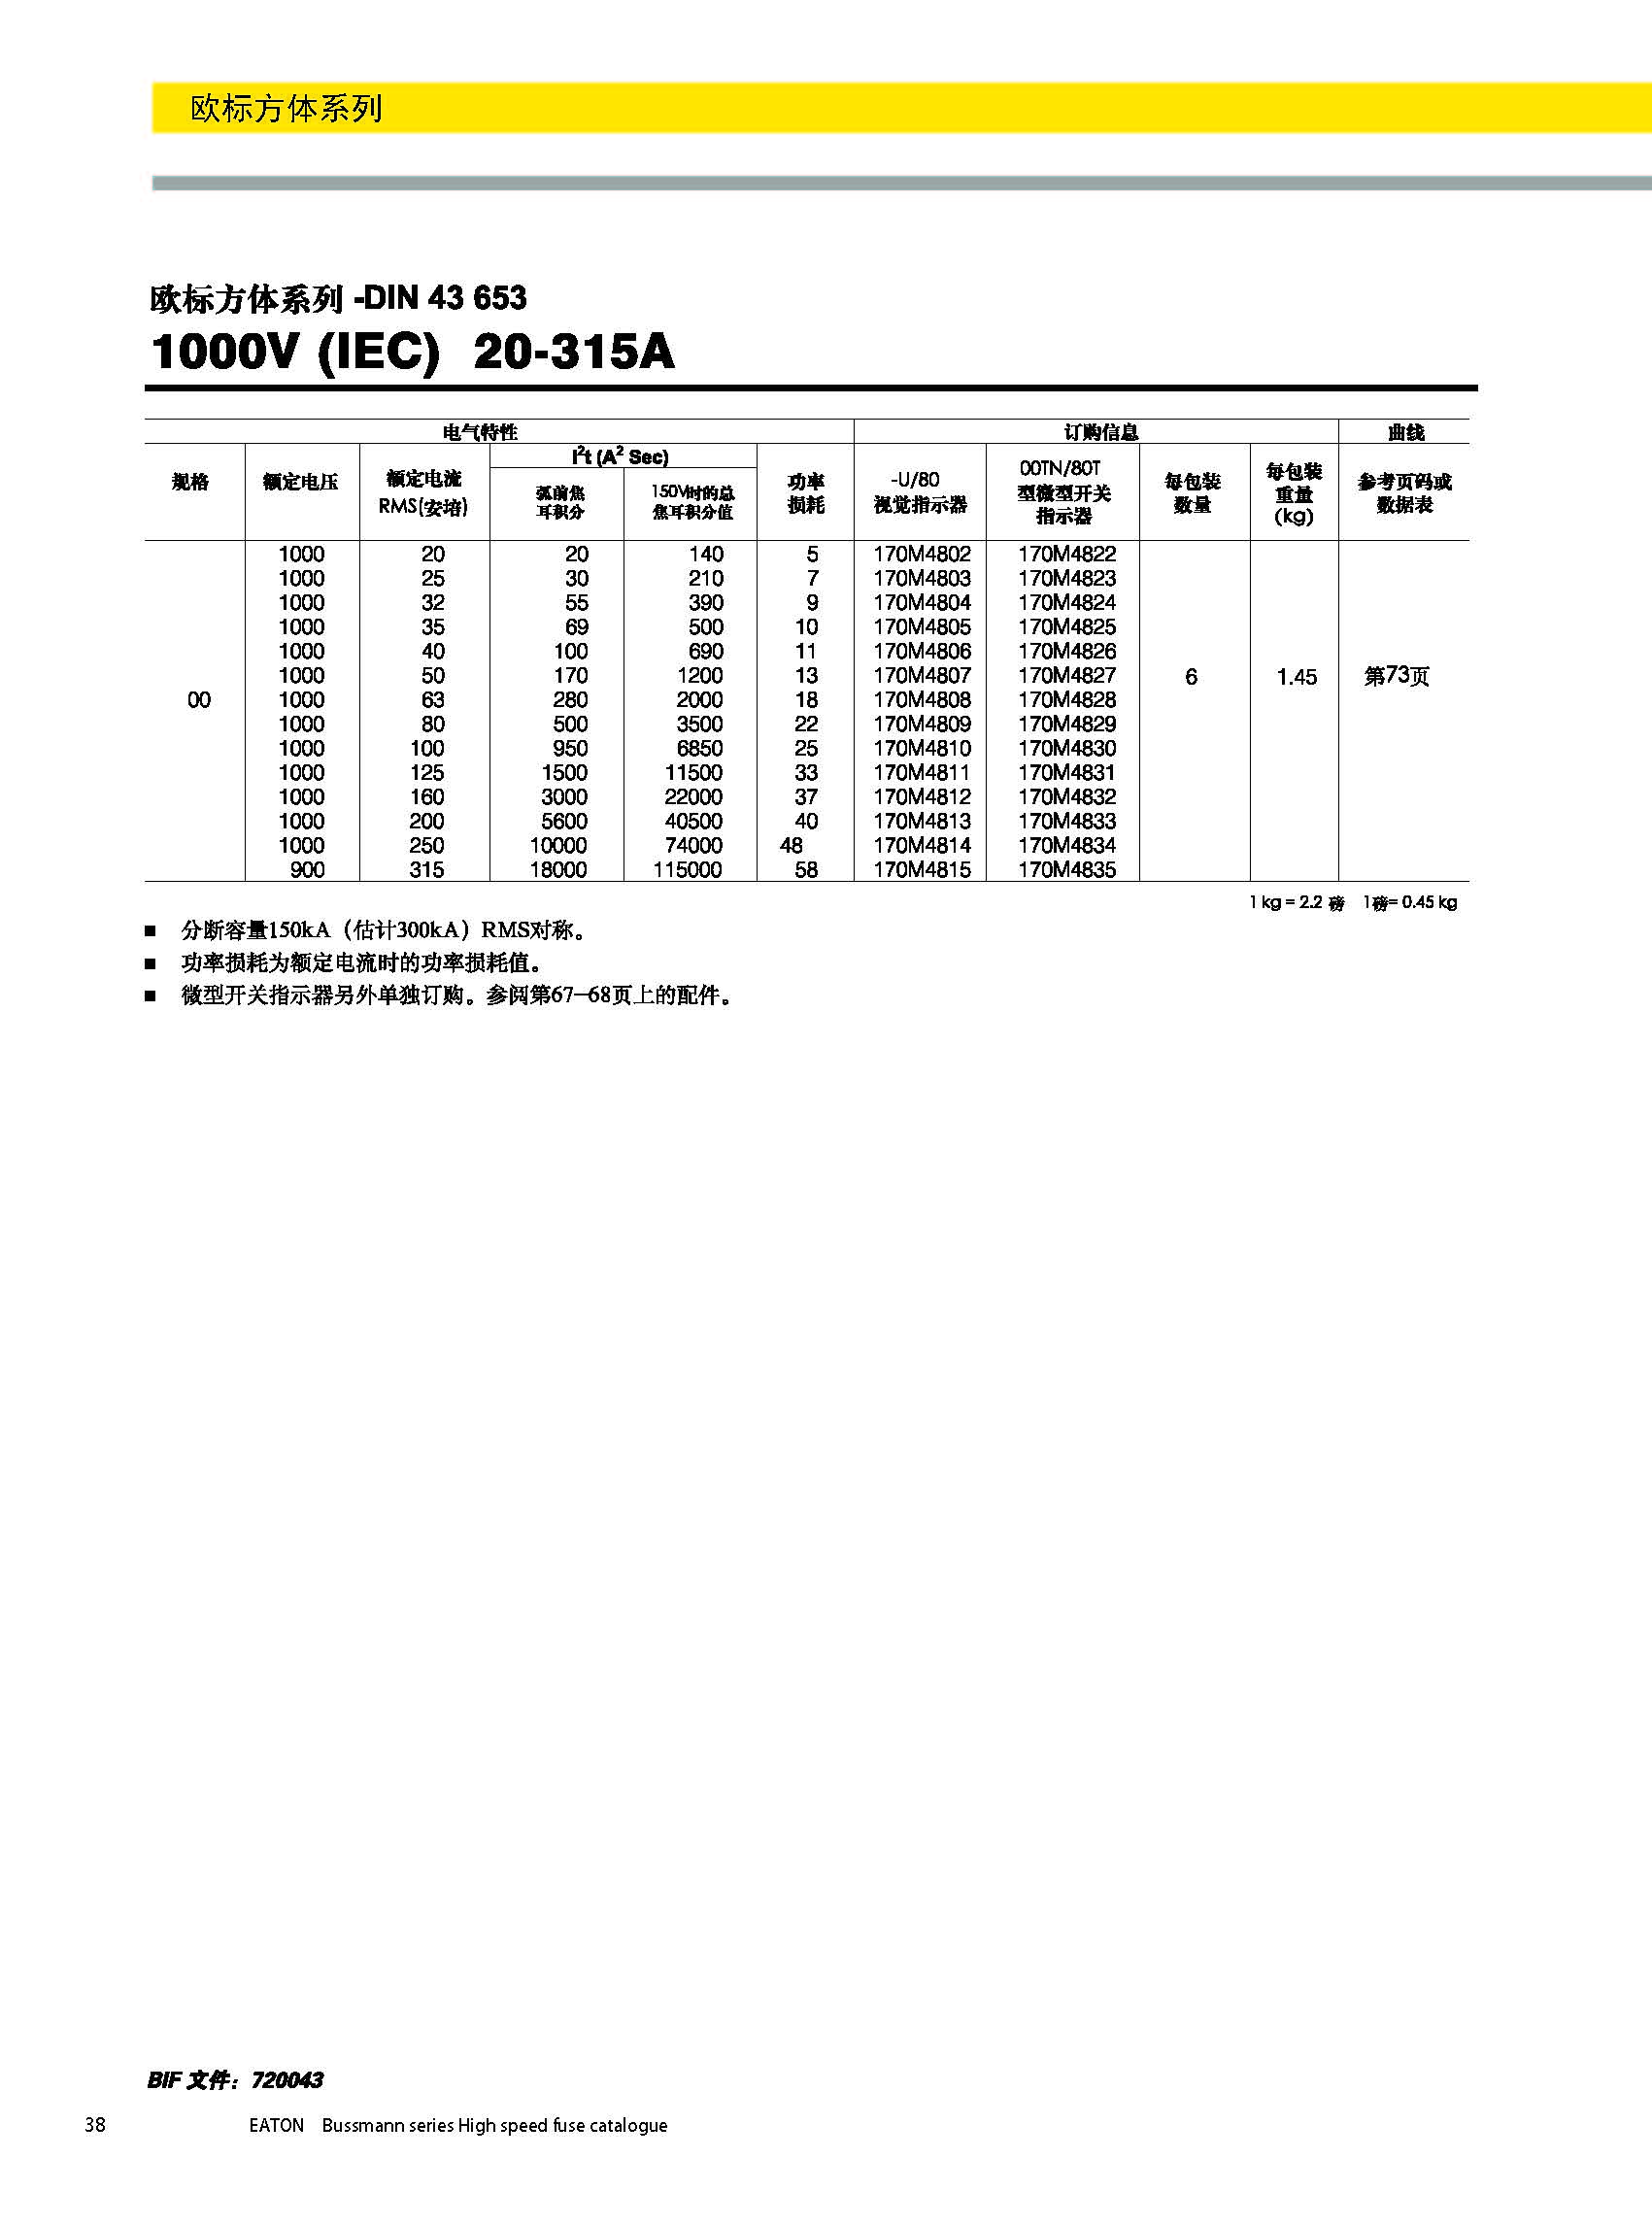 欧标方体DIN43653 1000V 20-315A产品选型参数